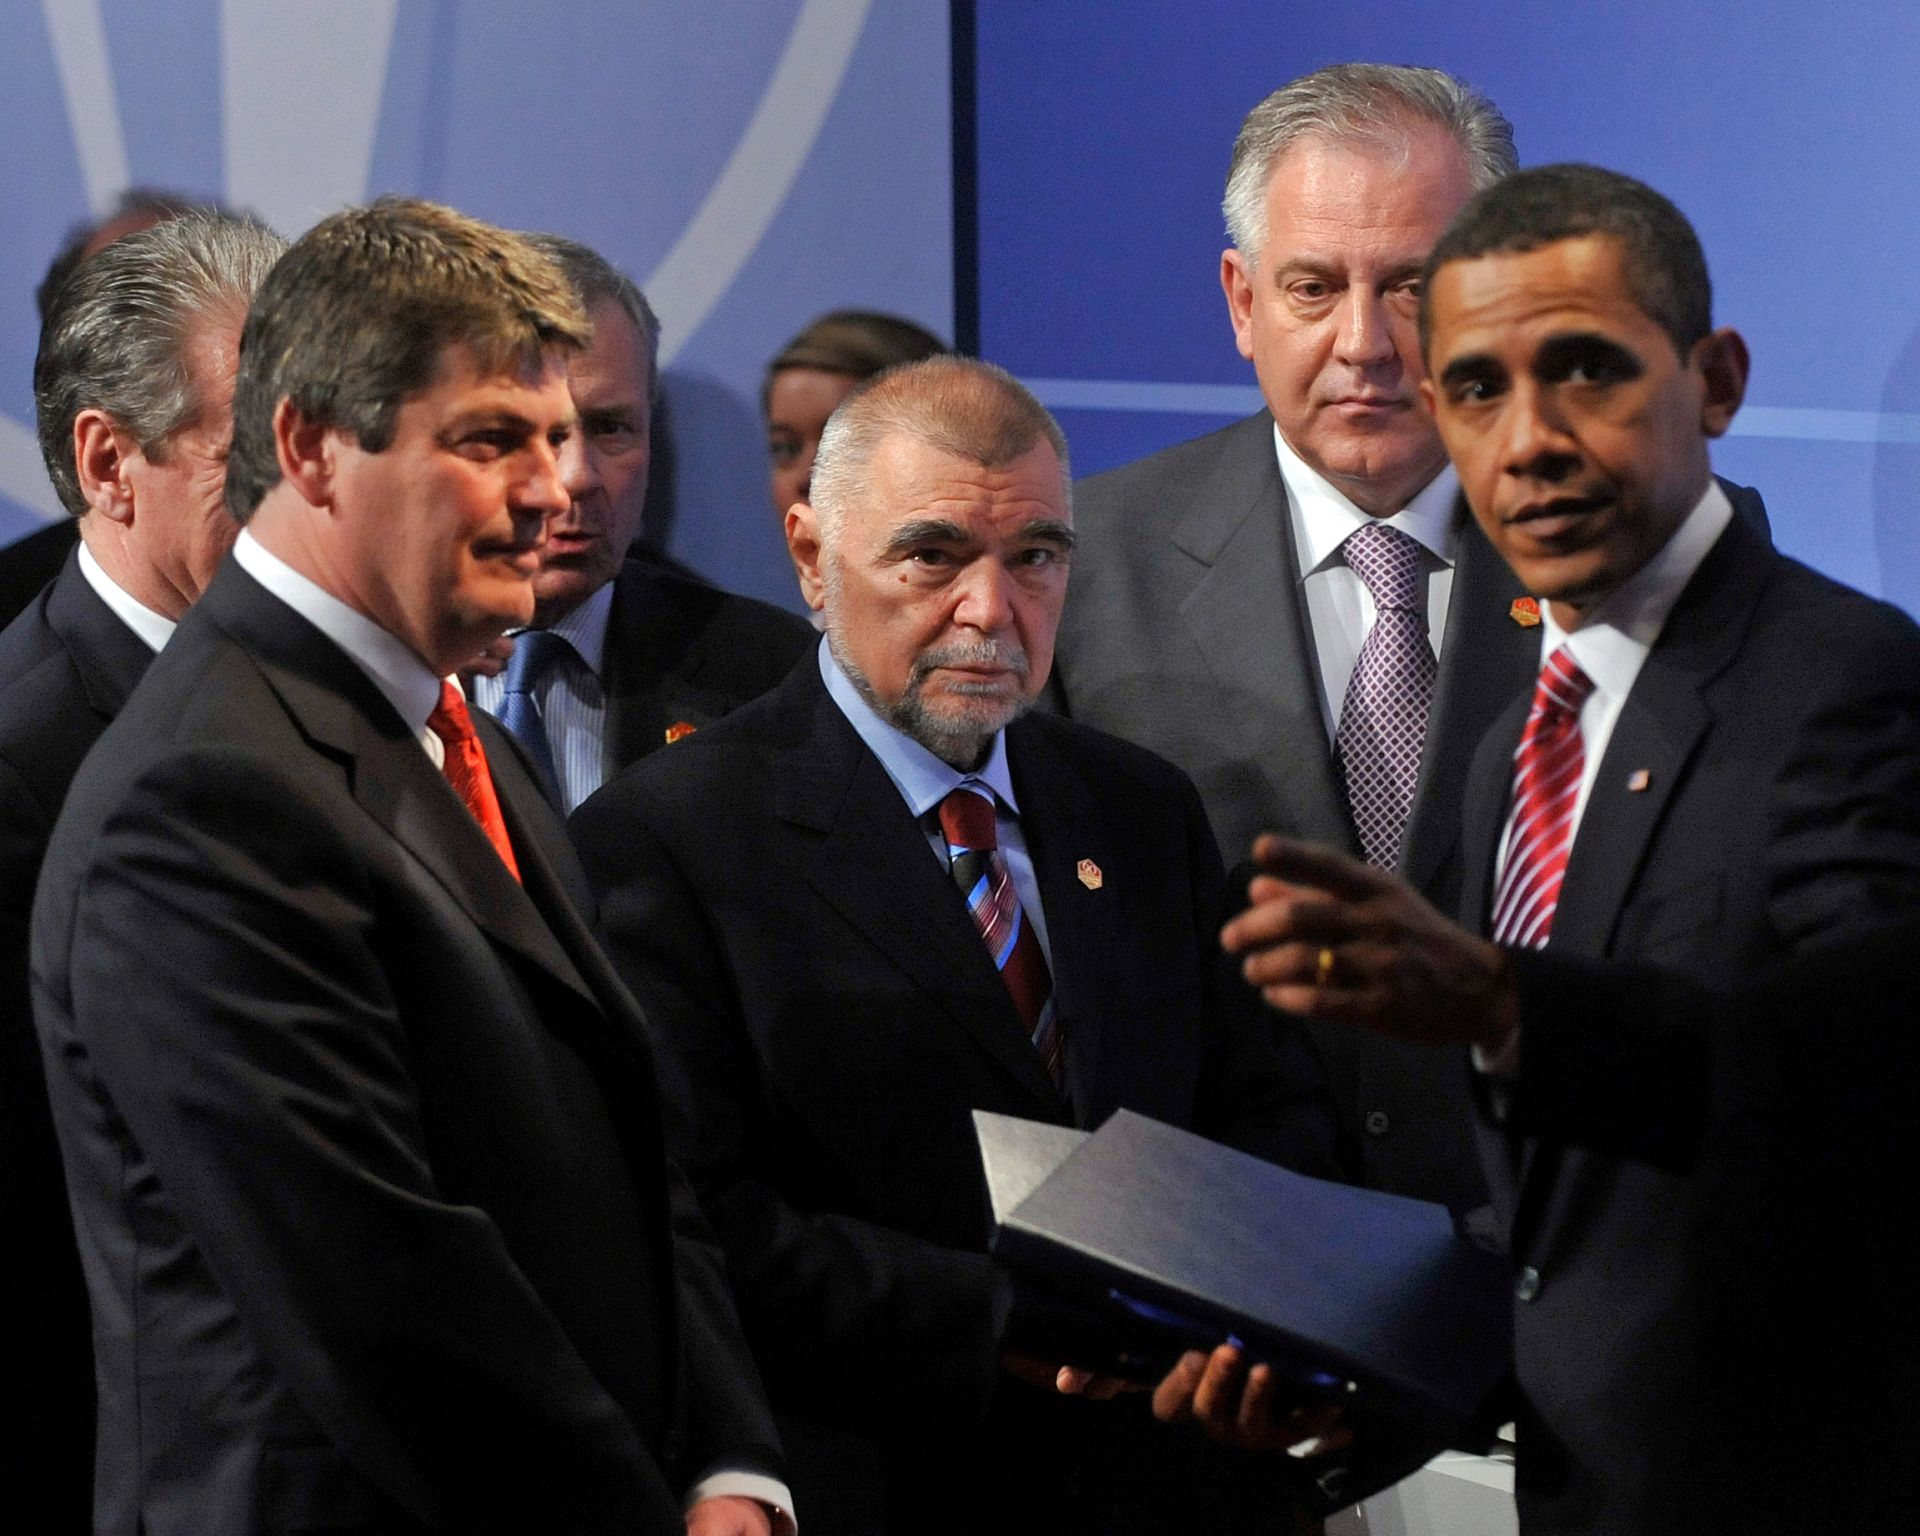 Strasbourg, 04.04.2009 - Amerièki predsjednik Barack Obama uruèio je u subotu na poèetku sastanka Sjevernoatlantskog vijeæa predsjednicima Hrvatske i Albanije Stjepanu Mesiæu i Bamiru Topiju kopiju Washingtonskog ugovora, èime im je simbolièno izraena dobrodolica u NATO. "Ponosni smo i uzbuðeni to vas imamo za saveznike, zasluili ste mjesto za zajednièkim stolom", rekao je Obama u kratkom govoru dobrodolice. Uz predsjednike dviju drava prigodom predaje kopija ugovora stajali su i premijeri Ivo Sanader i Sali Berisha. Na slici predsjednik Republike Hrvatske Stepan Mesiæ, hrvatski premijer Ivo Sanader, amerièki predsjednik Barak Obama i albanski predsjednik Bamir Topi.
foto FaH/ Damir SENÈAR /ds